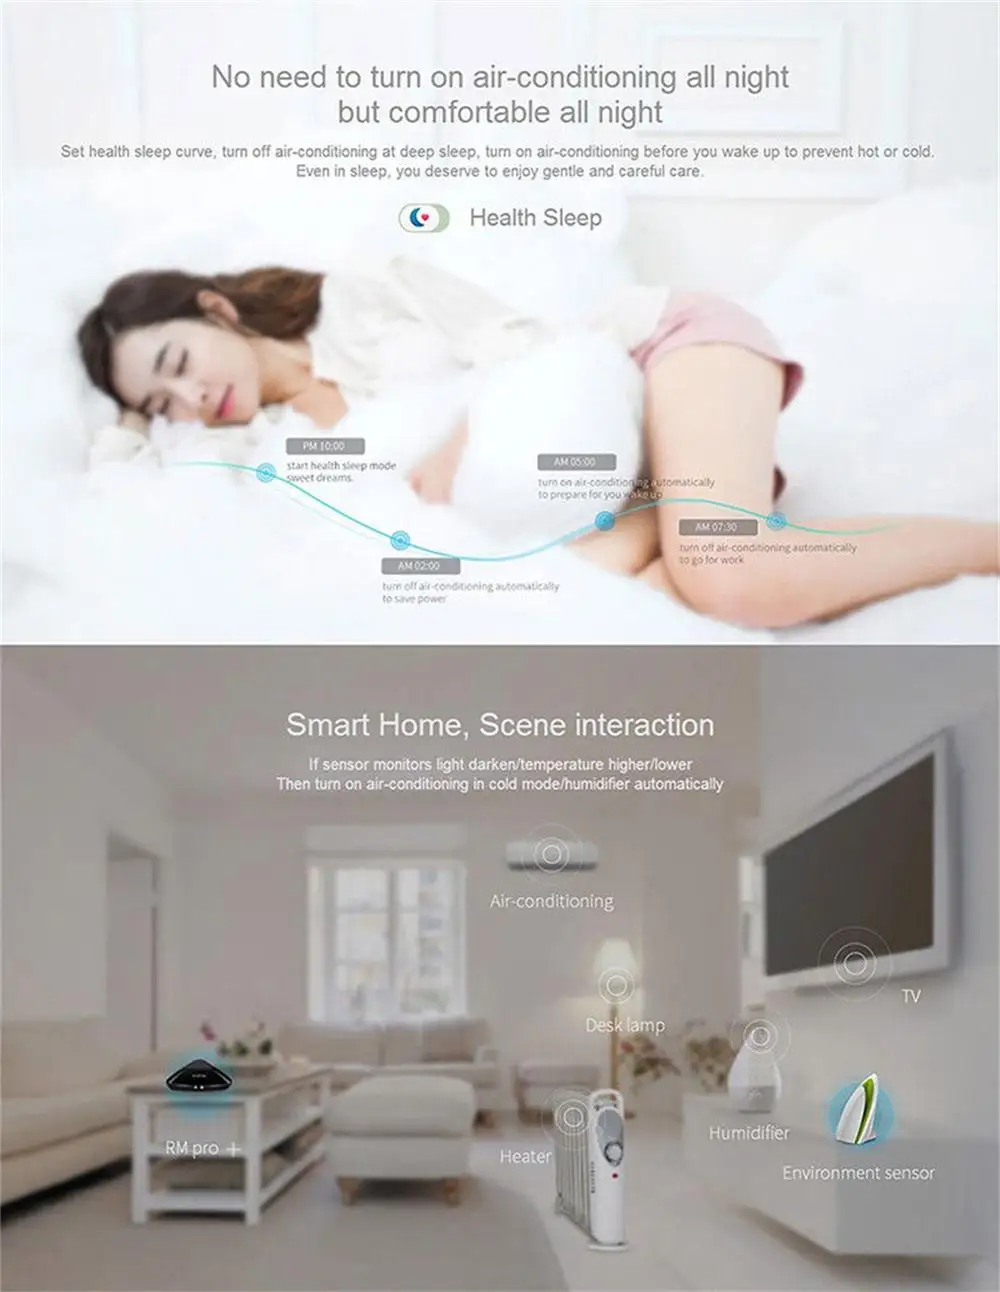 Broadlink умный дом управление Лер RM Pro RM33 RM Mini3 wifi IR RF Siri голосовой пульт дистанционного управления для Alexa Google домашняя Автоматизация